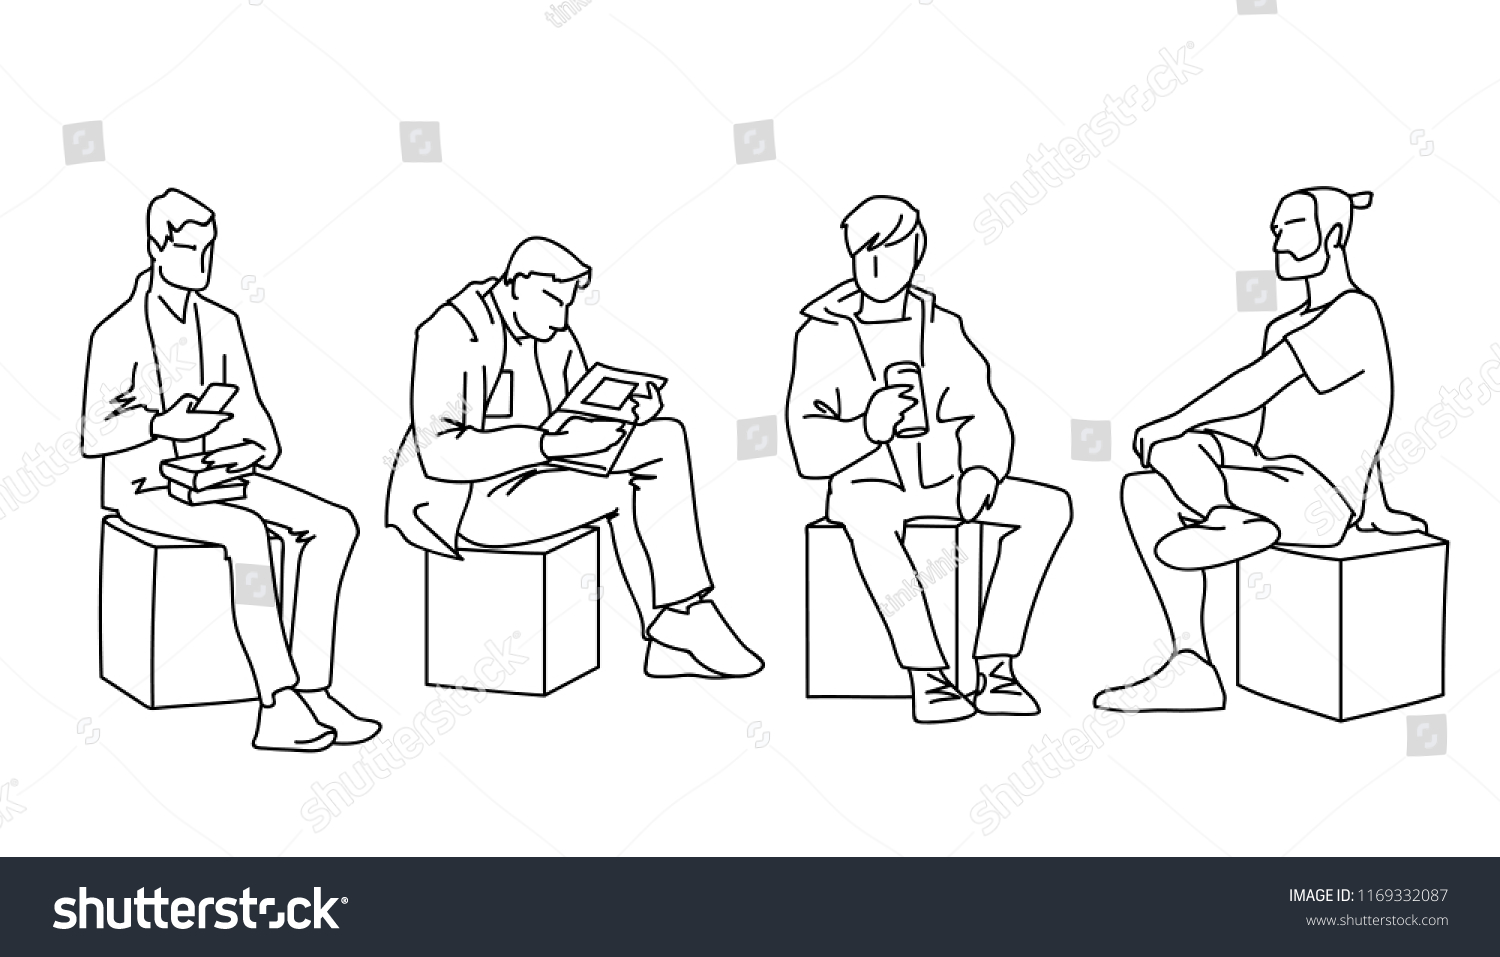 男性は違うポーズで座っている 白い背景に黒い線 コンセプト 角切りに並んだ様々な男性のベクターイラスト 単色の手描きのスケッチ のベクター画像素材 ロイヤリティフリー